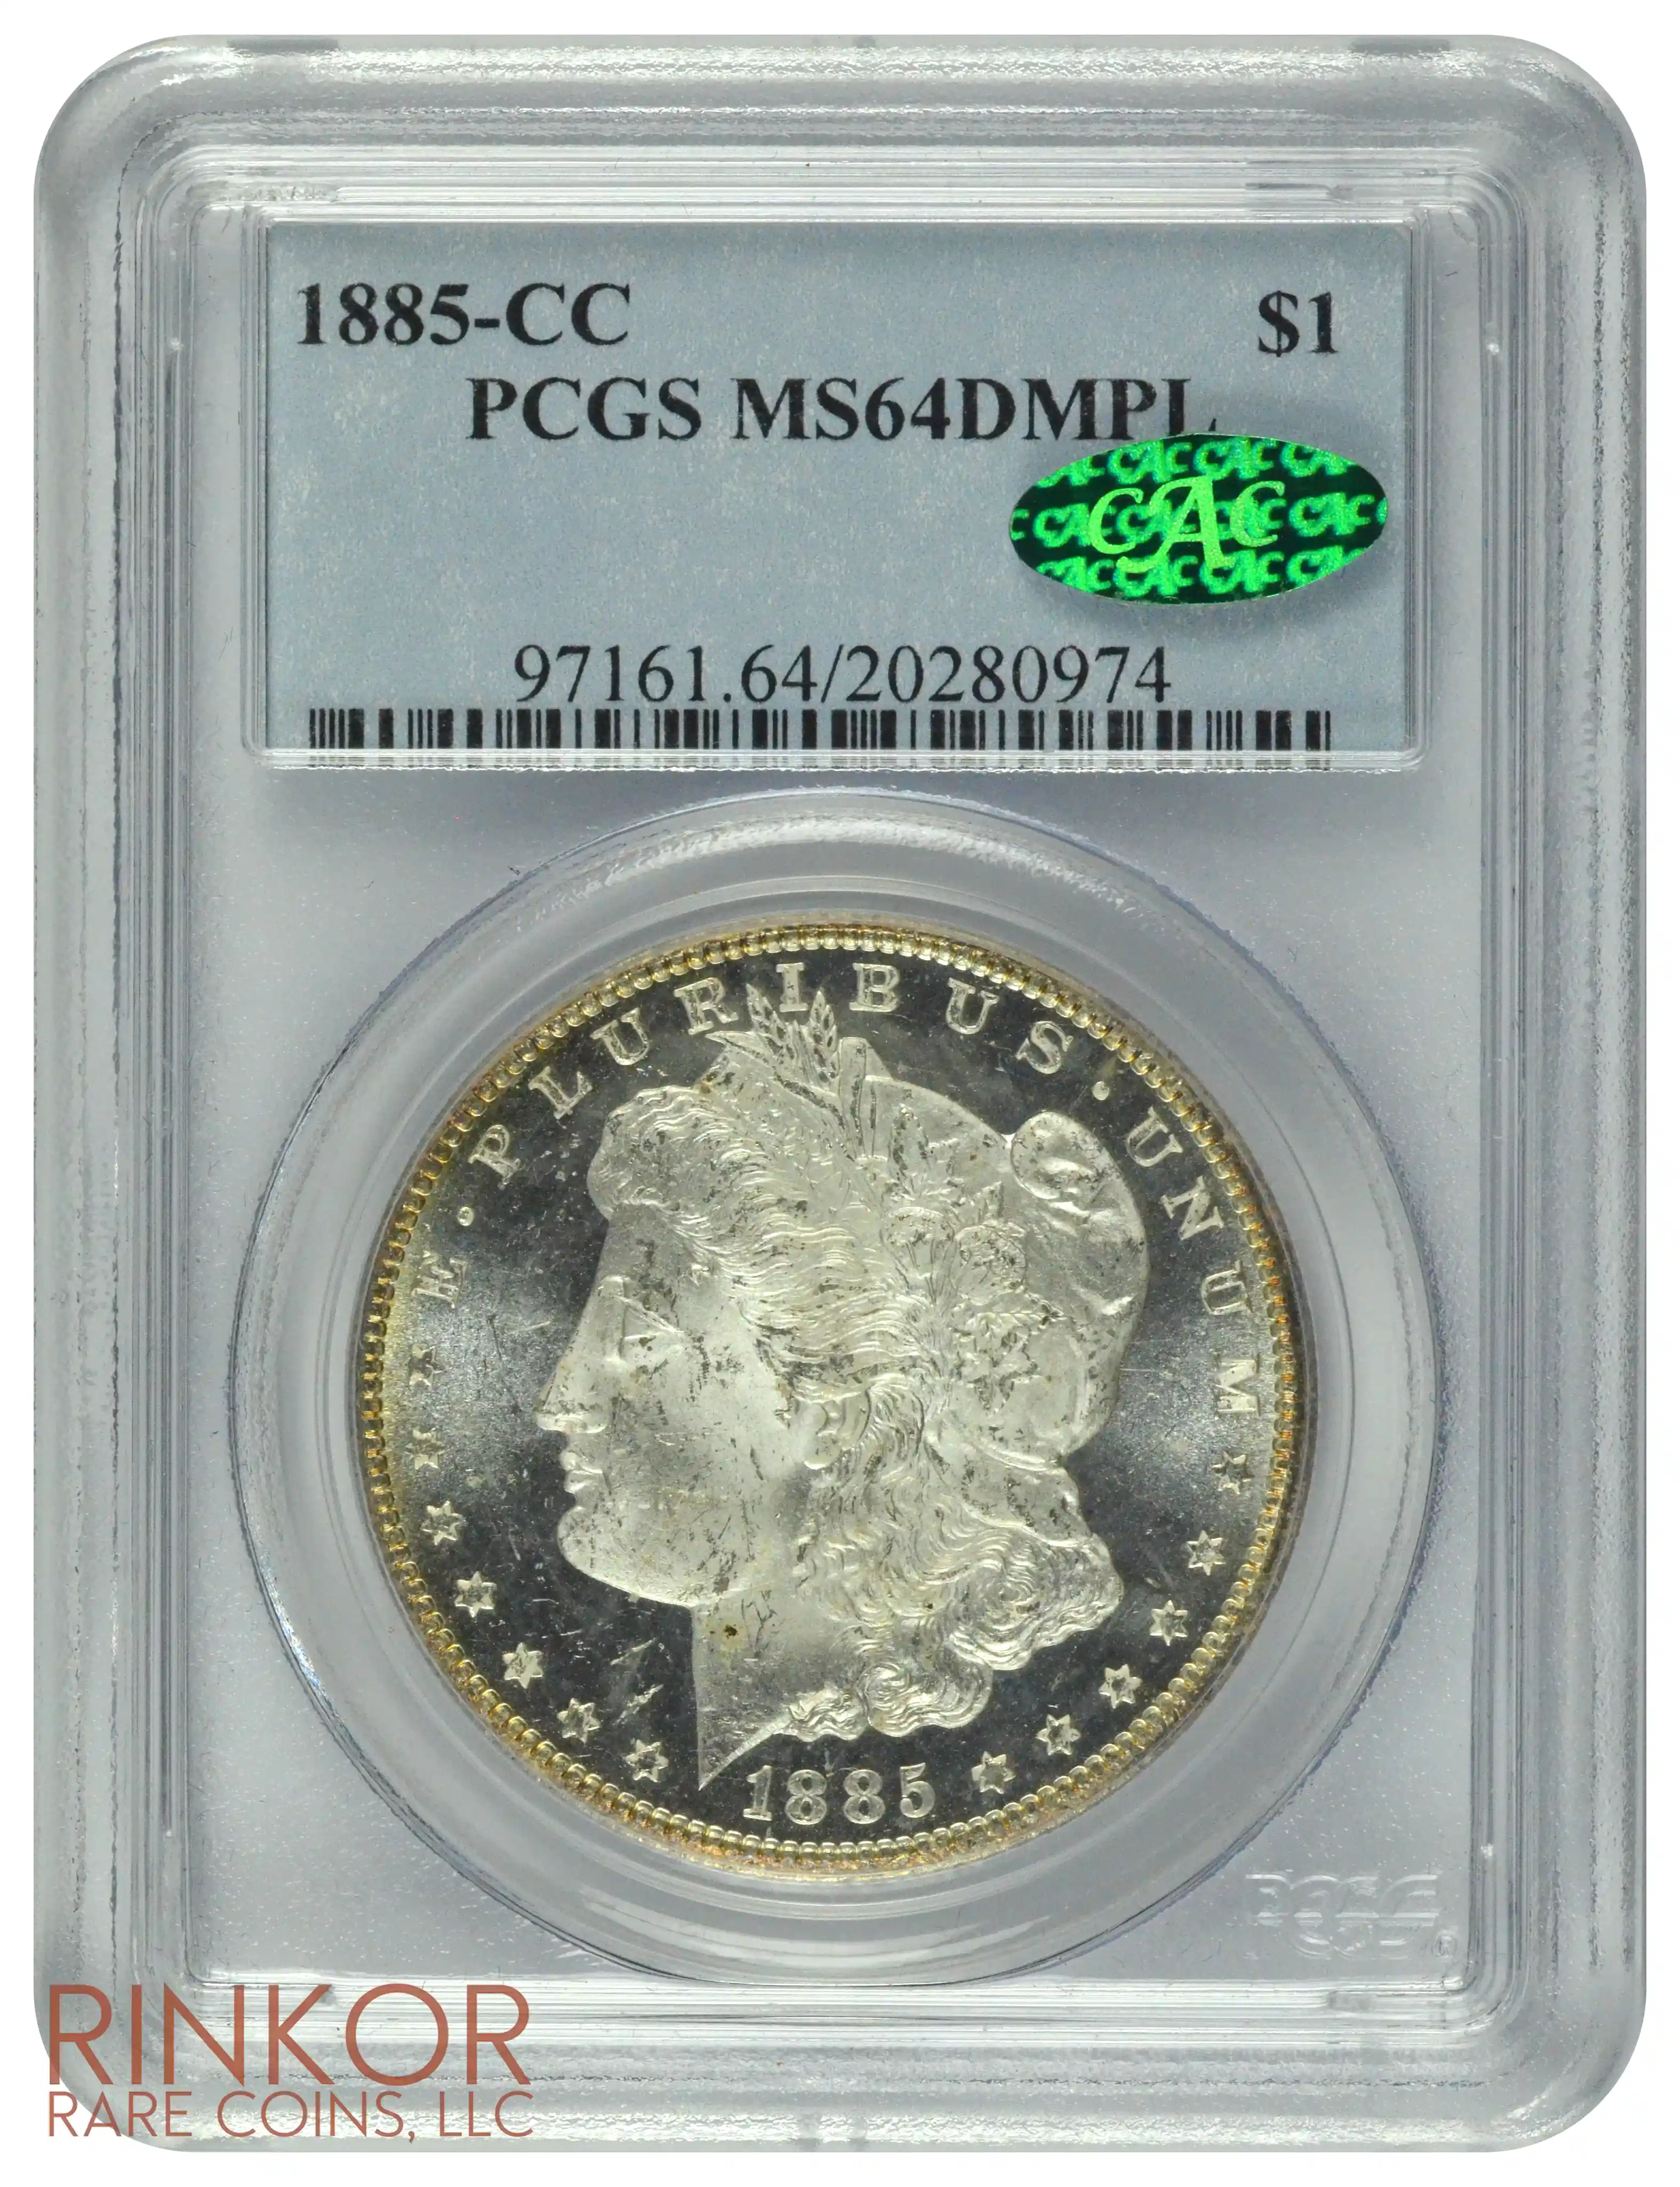 1885-CC $1 PCGS MS 64 DMPL CAC